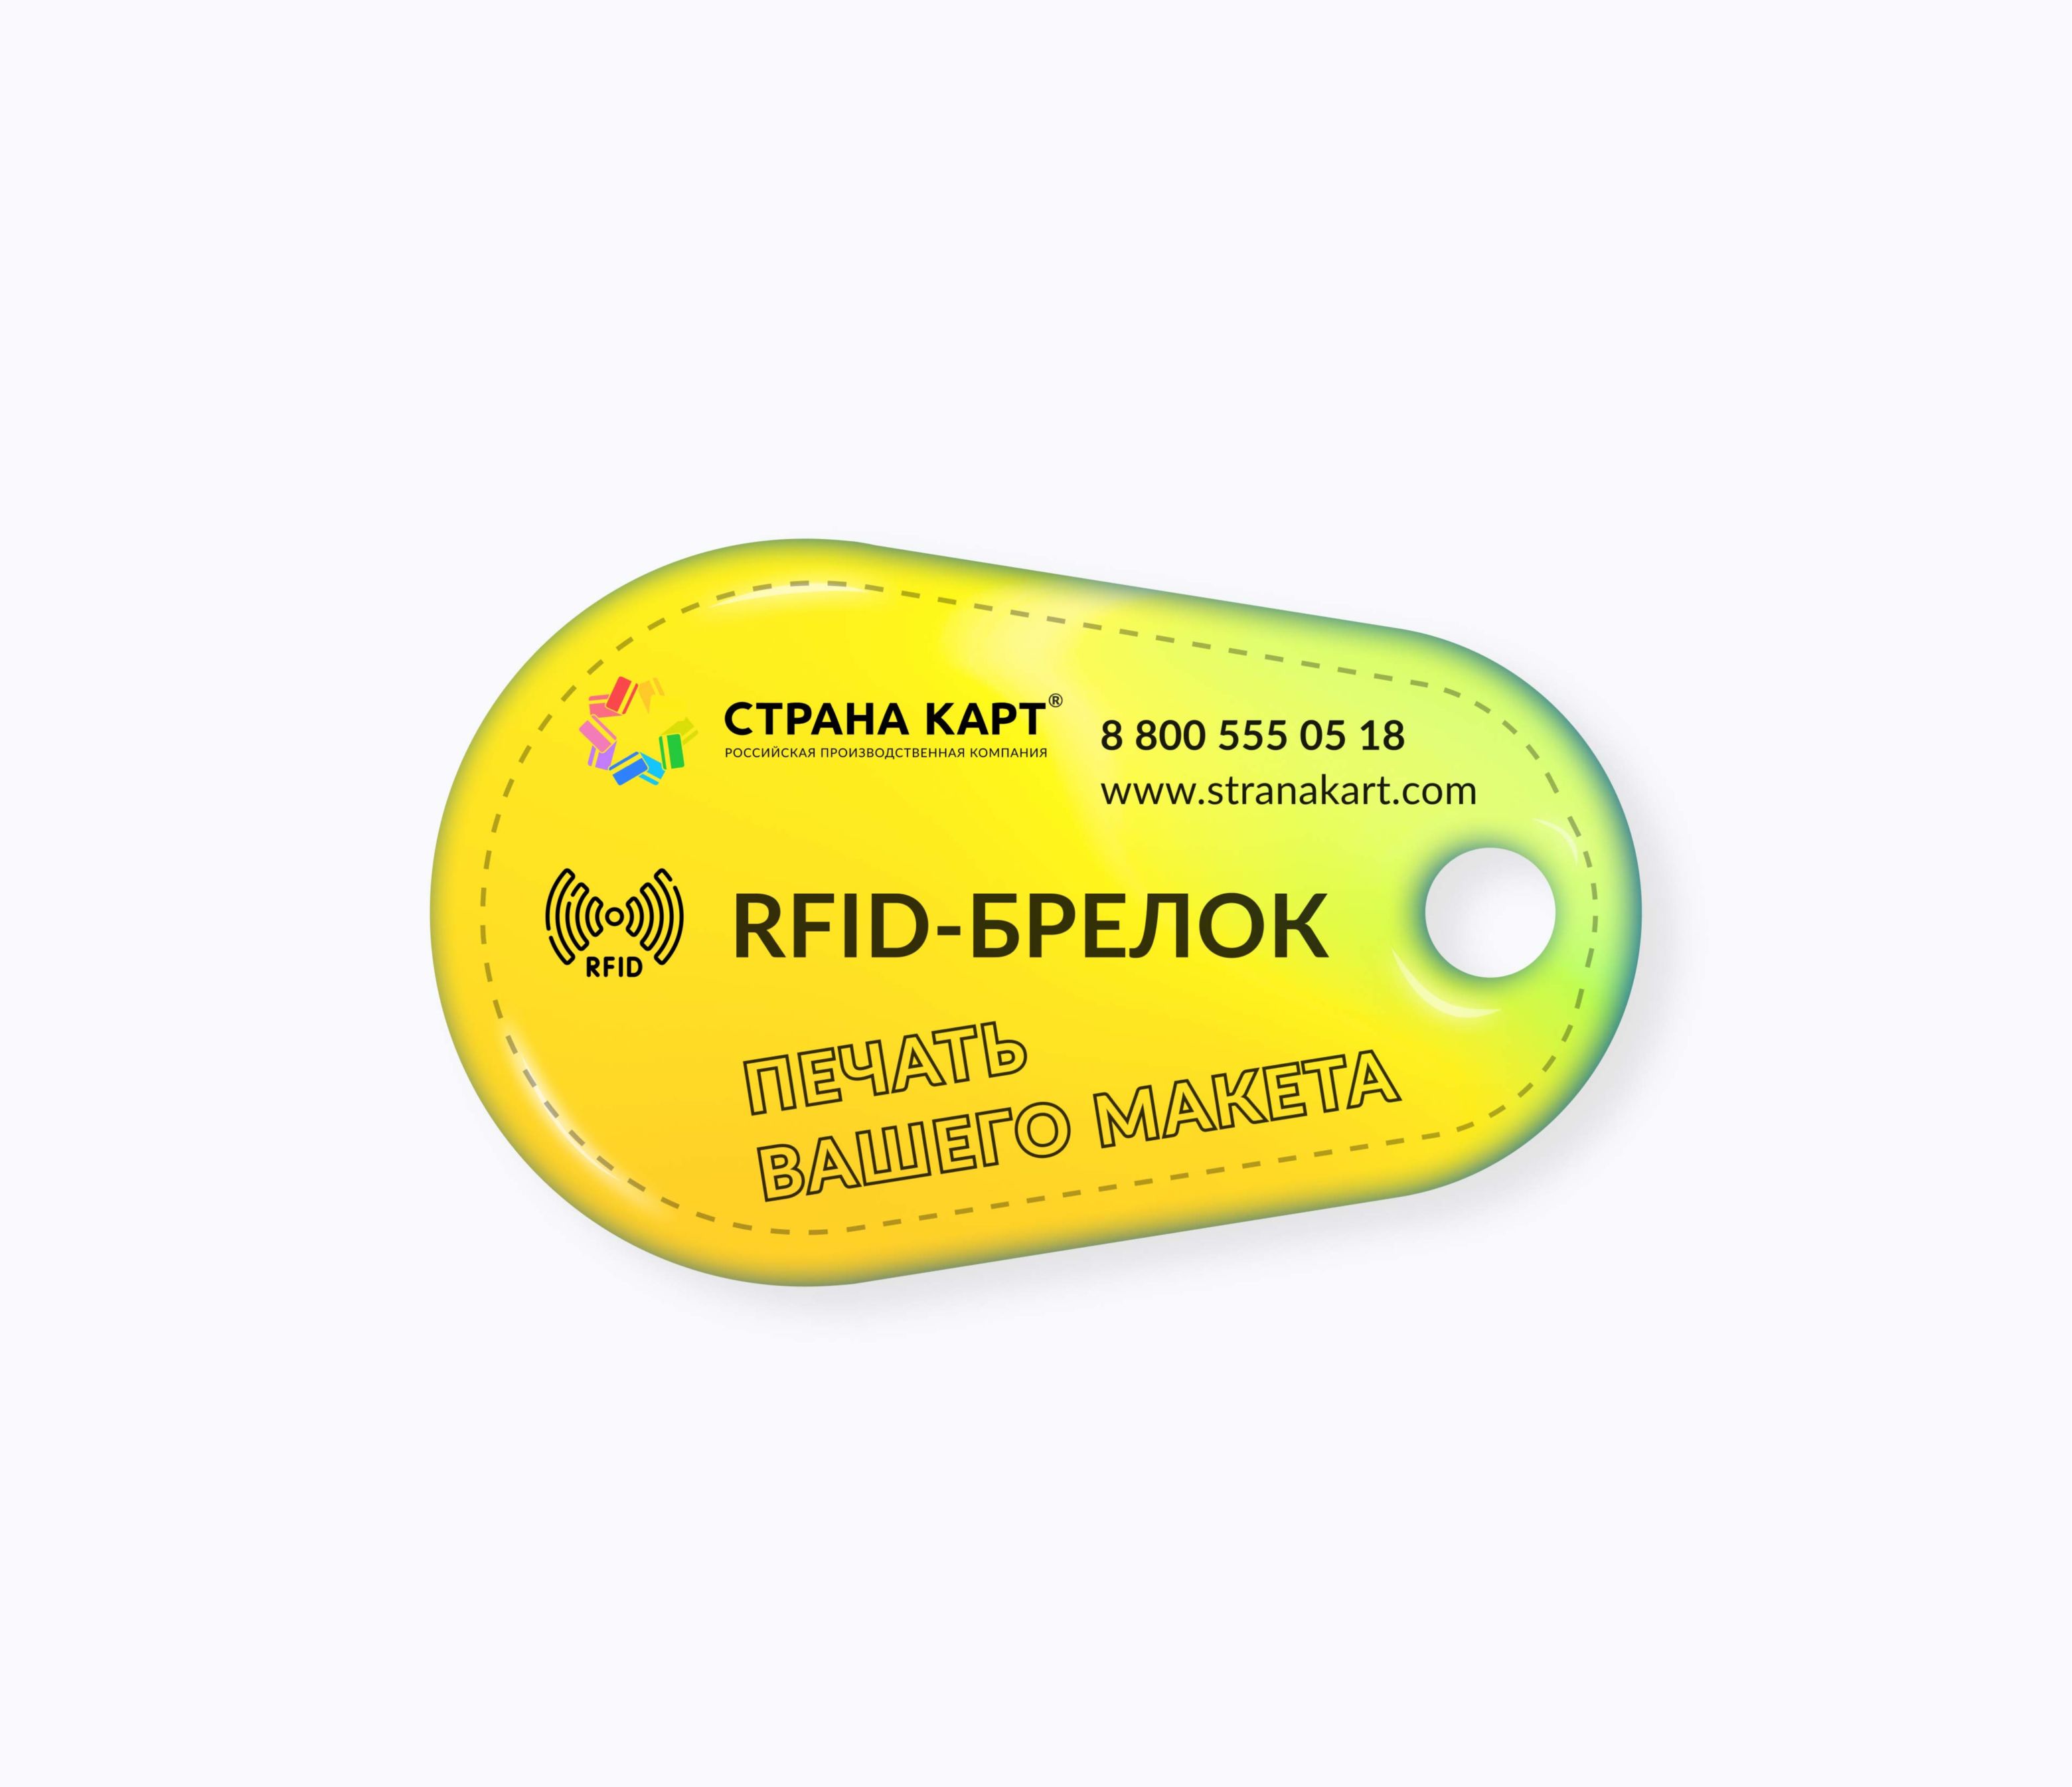 Каплевидные RFID-брелоки NEOKEY® с чипом для оплаты школьного питания RFID-брелоки NEOKEY® с чипом для оплаты школьного питания